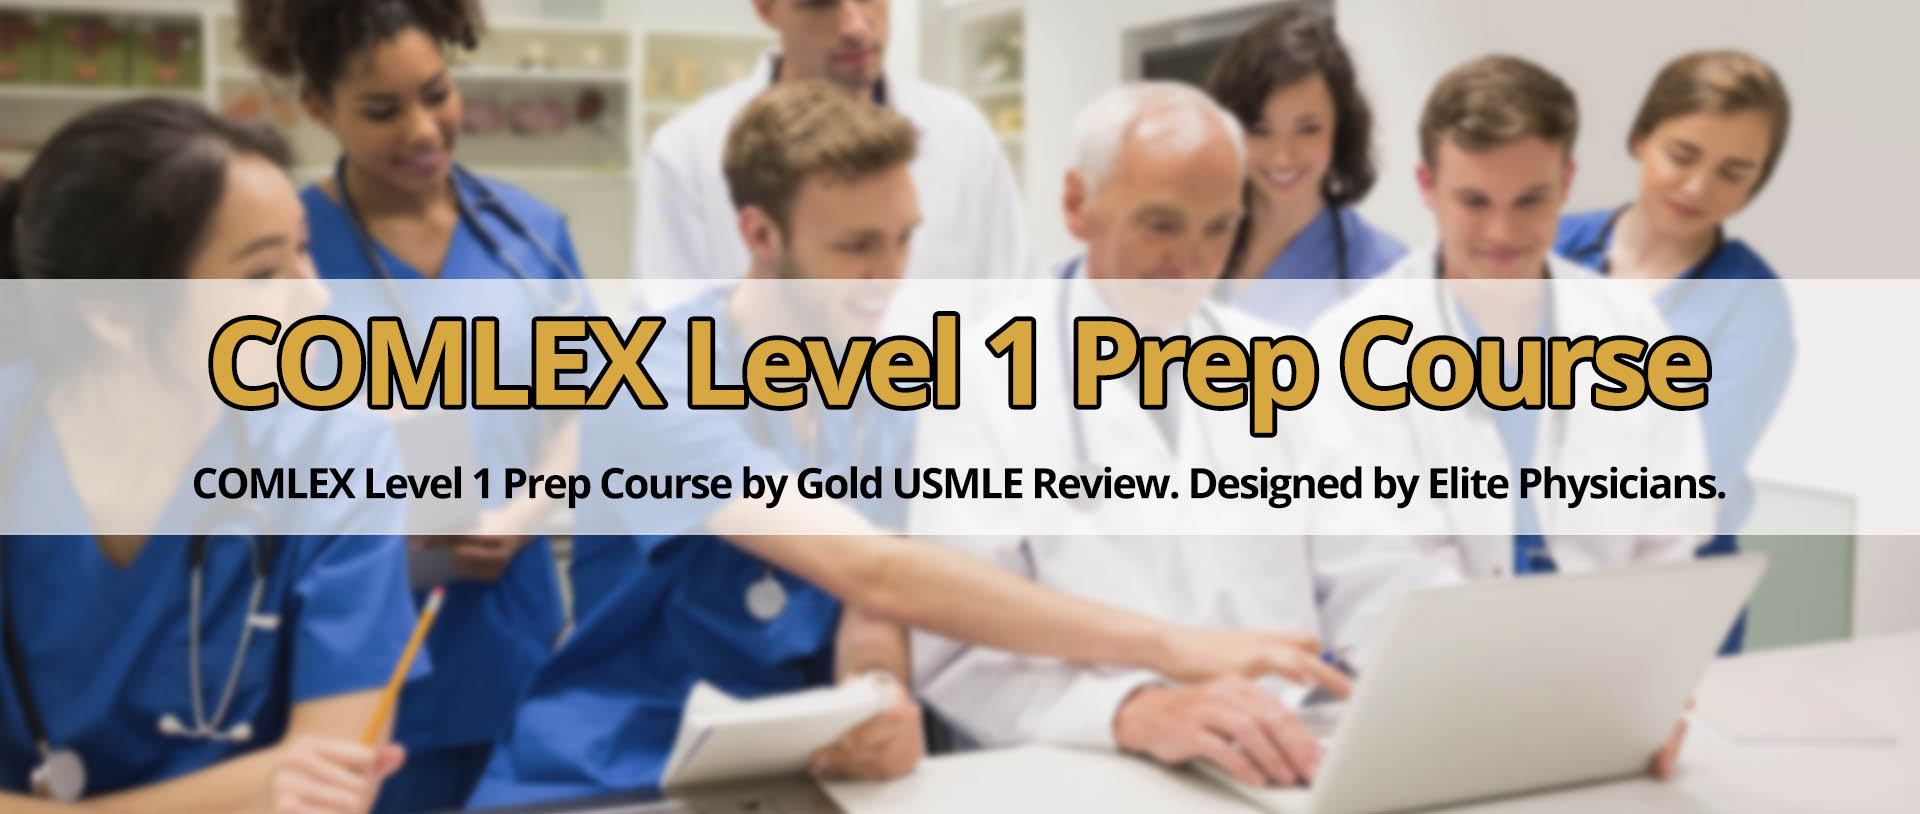 COMLEX Level 1 Prep Course